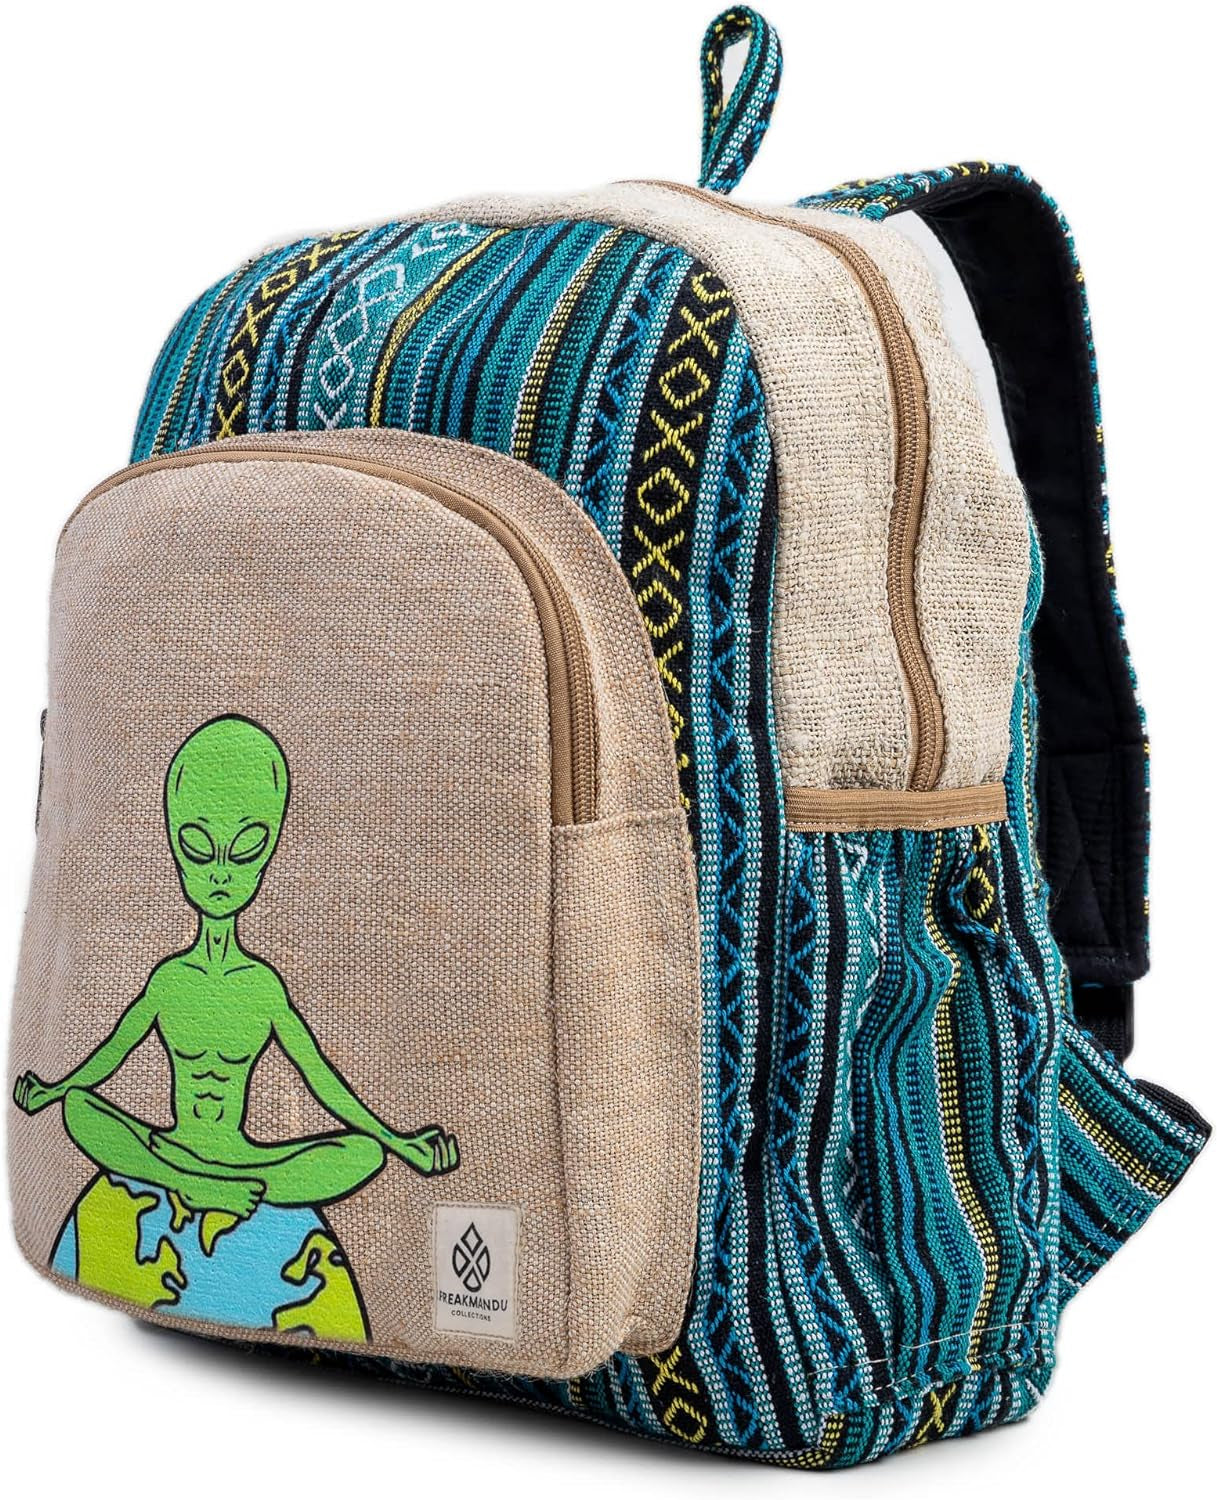 Alien Hemp Backpack Bag - Eco Friendly Hippie Yak Design Durable Functional Traveling Hiking Friendly Casual Daypack Bag by Freakmandu